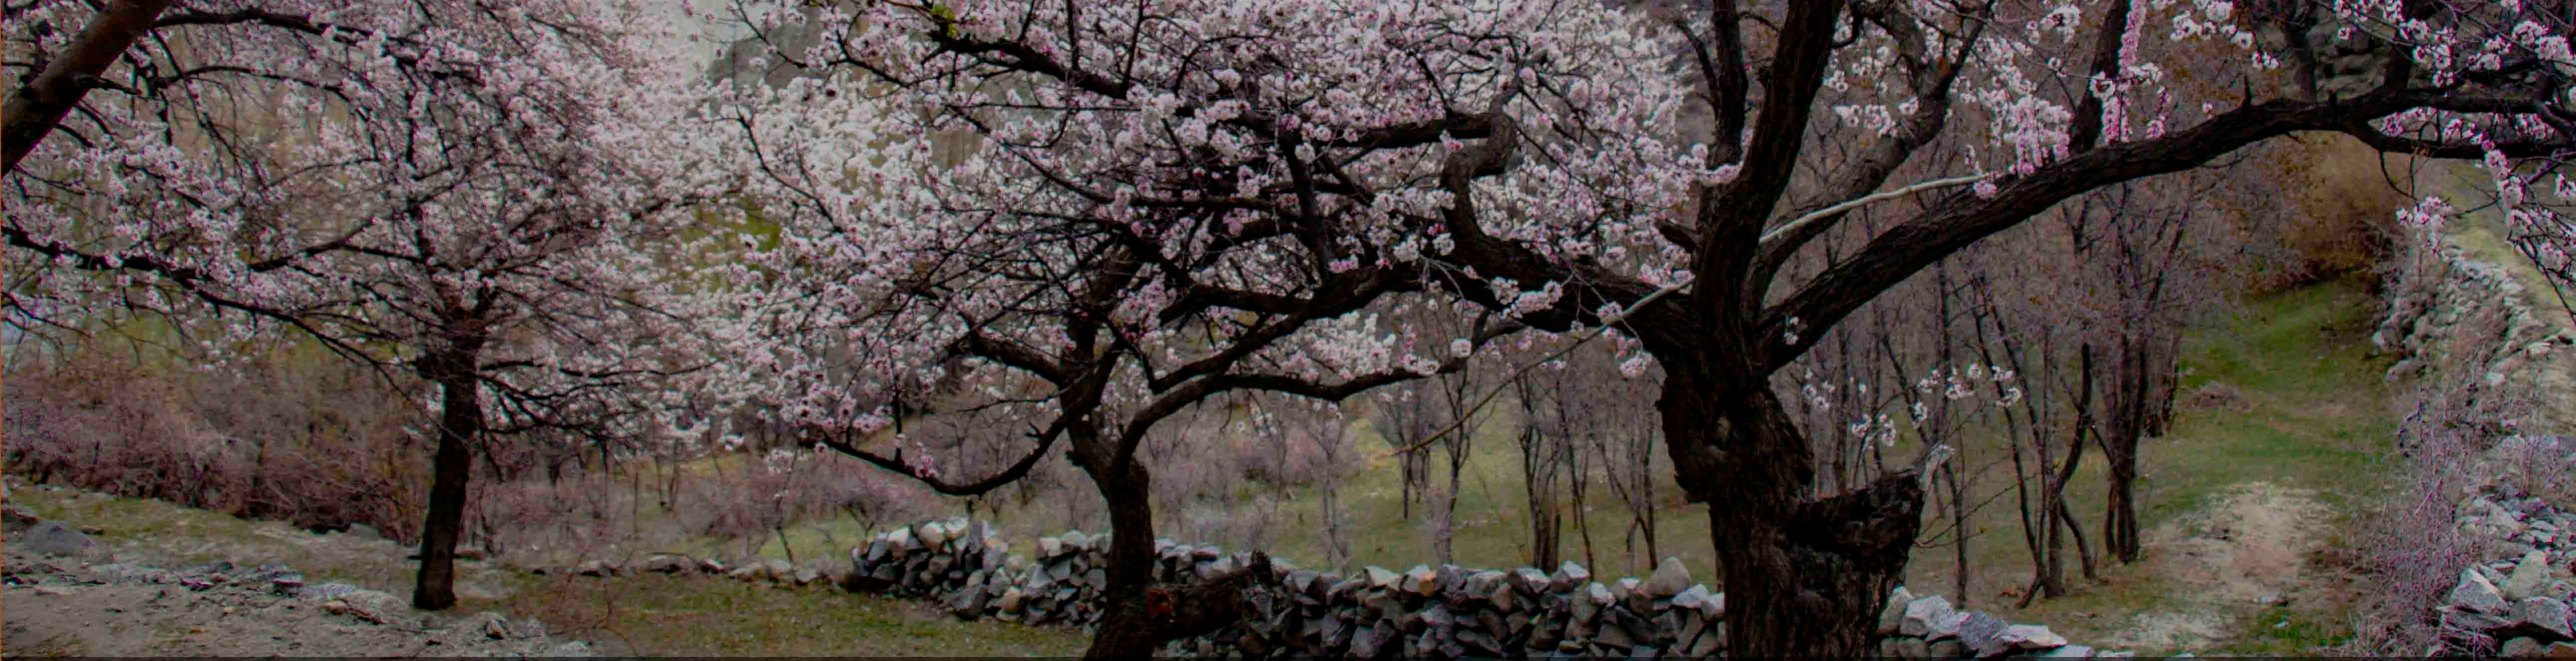 tourhub | Hunza Explorers Treks & Tours | Hunza Cherry Blossom 